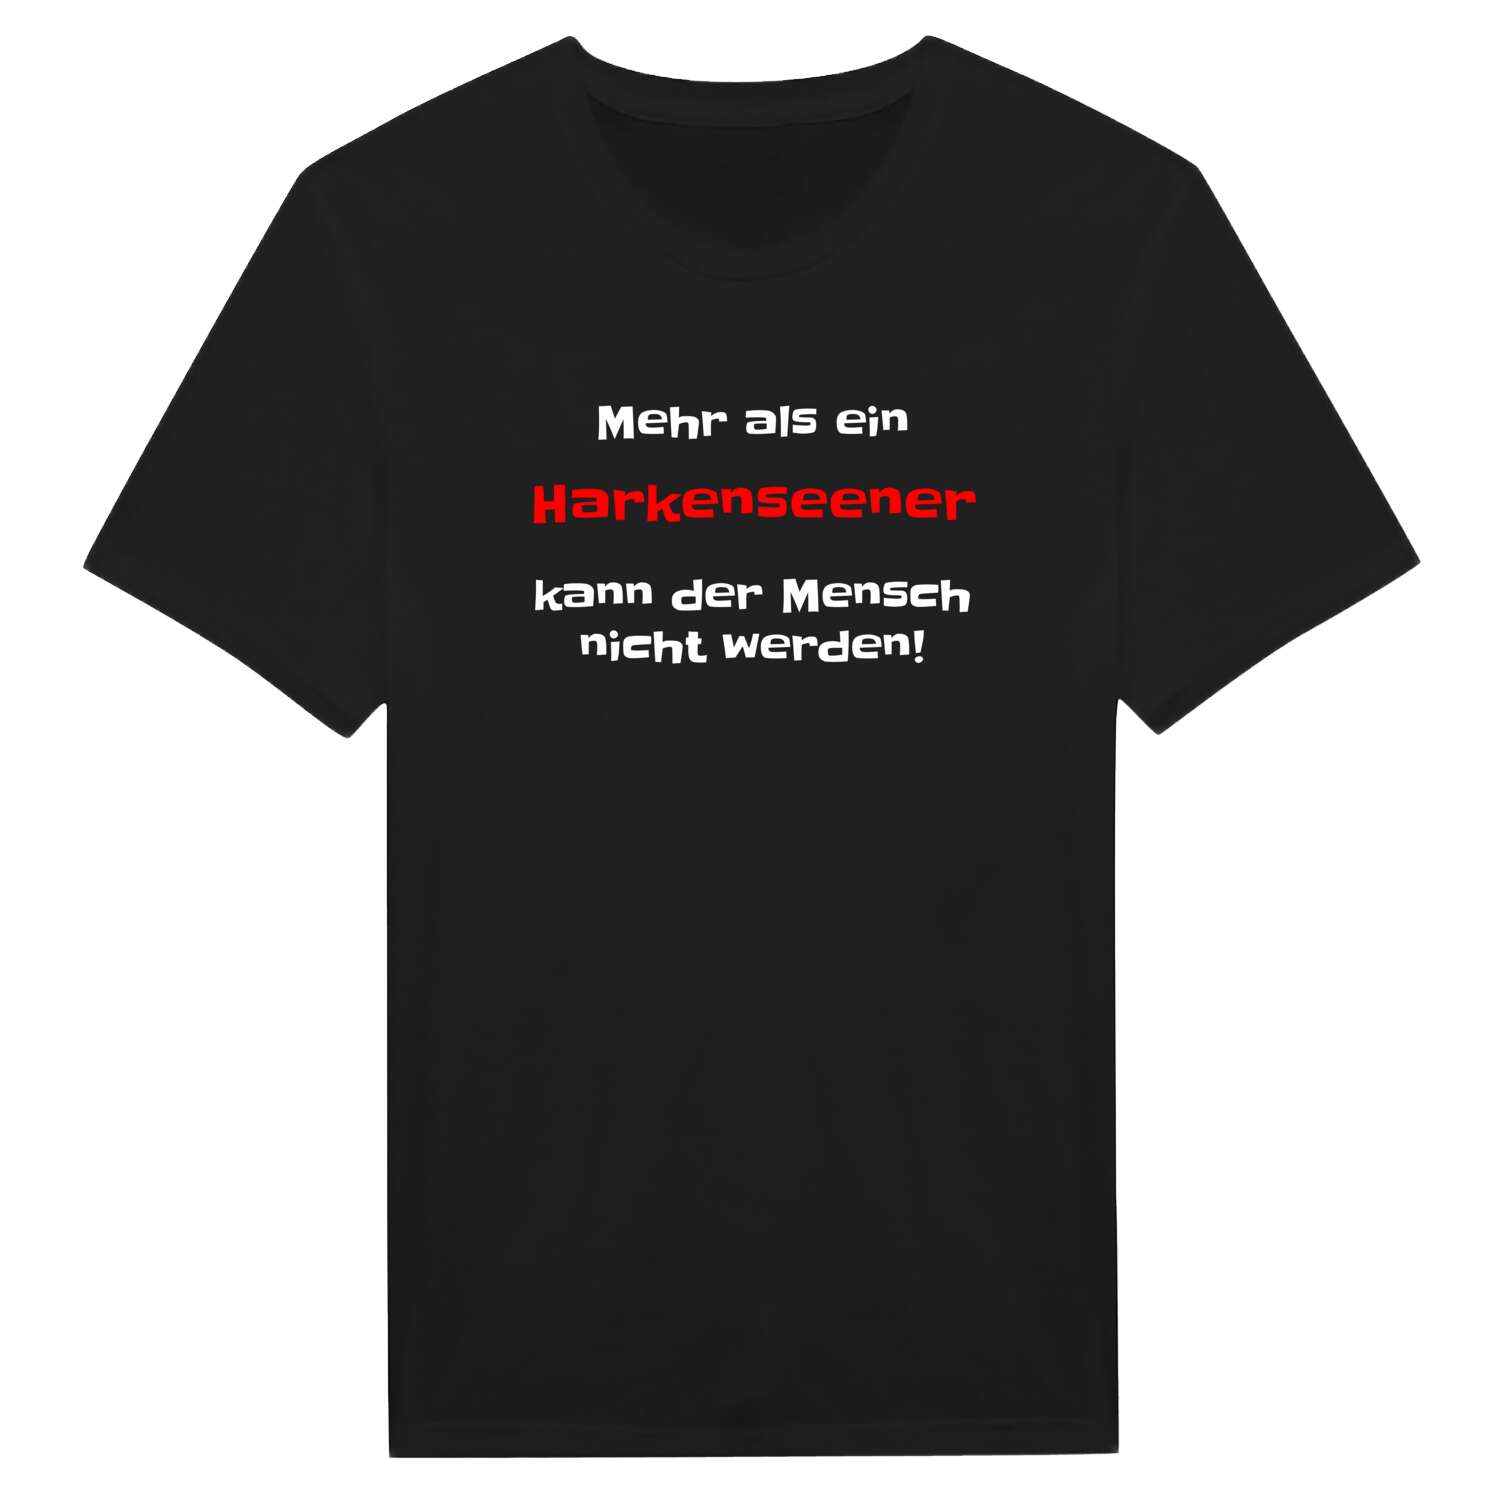 Harkensee T-Shirt »Mehr als ein«